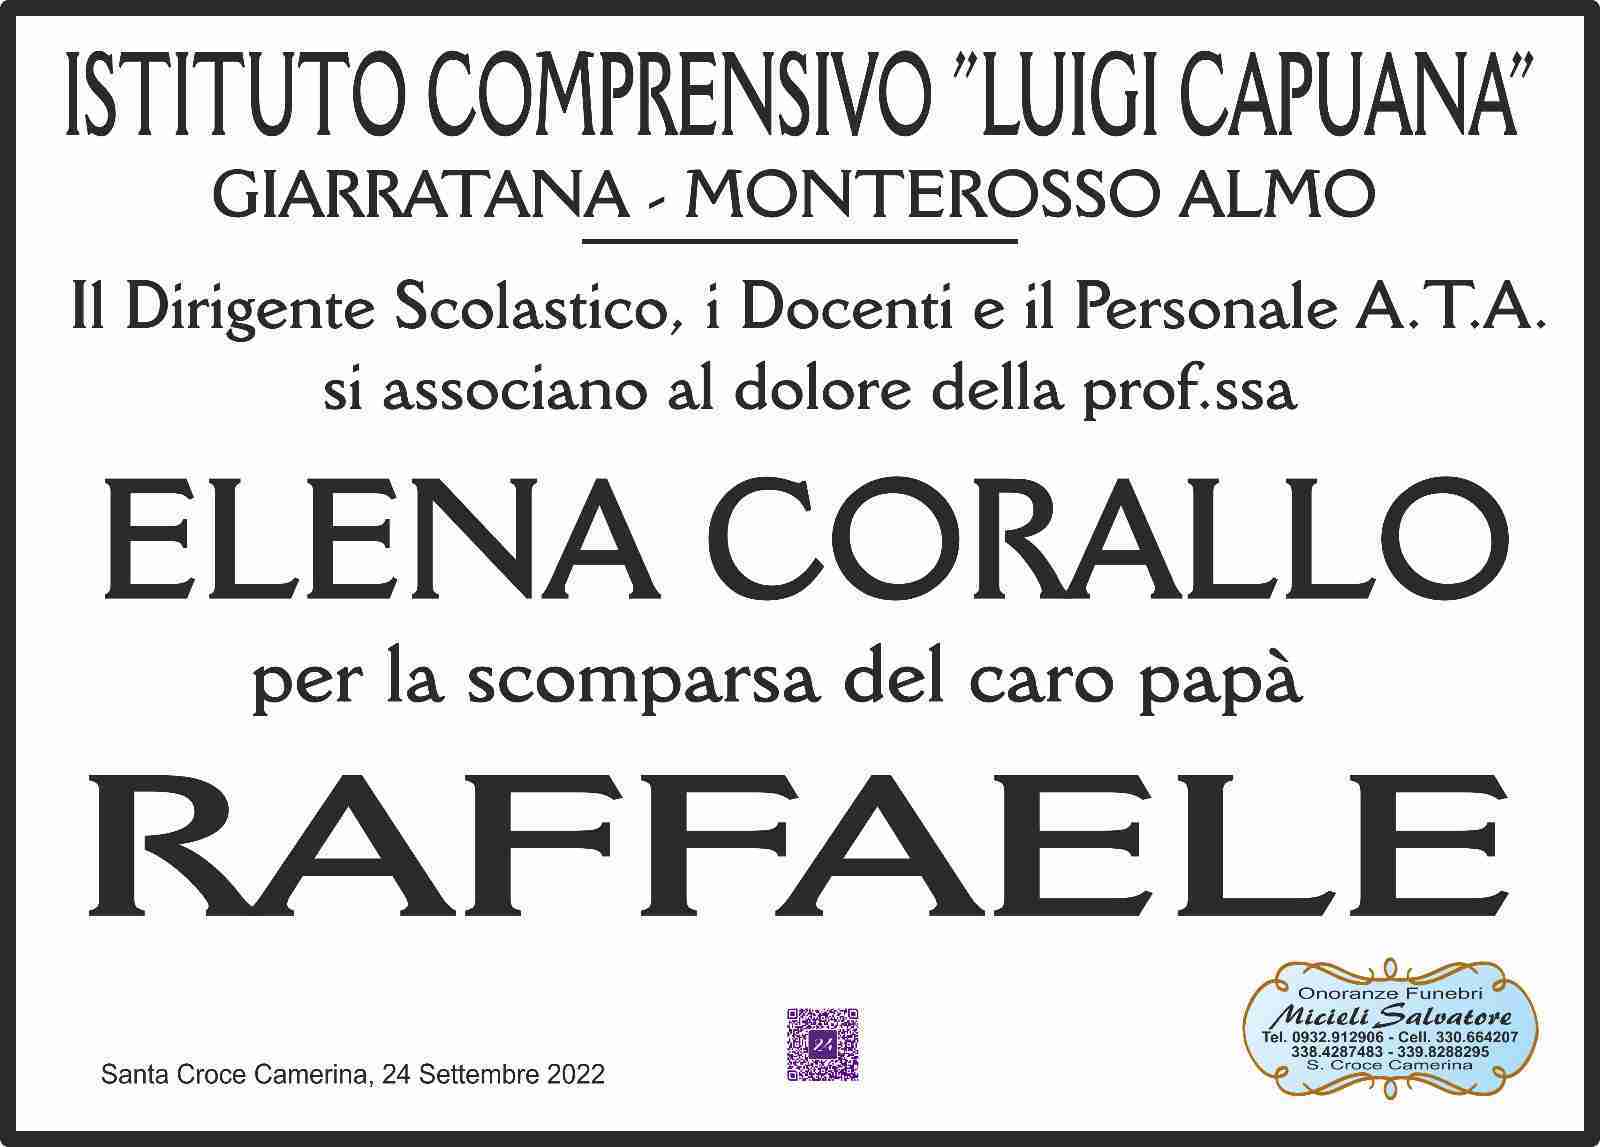 Raffaele Corallo